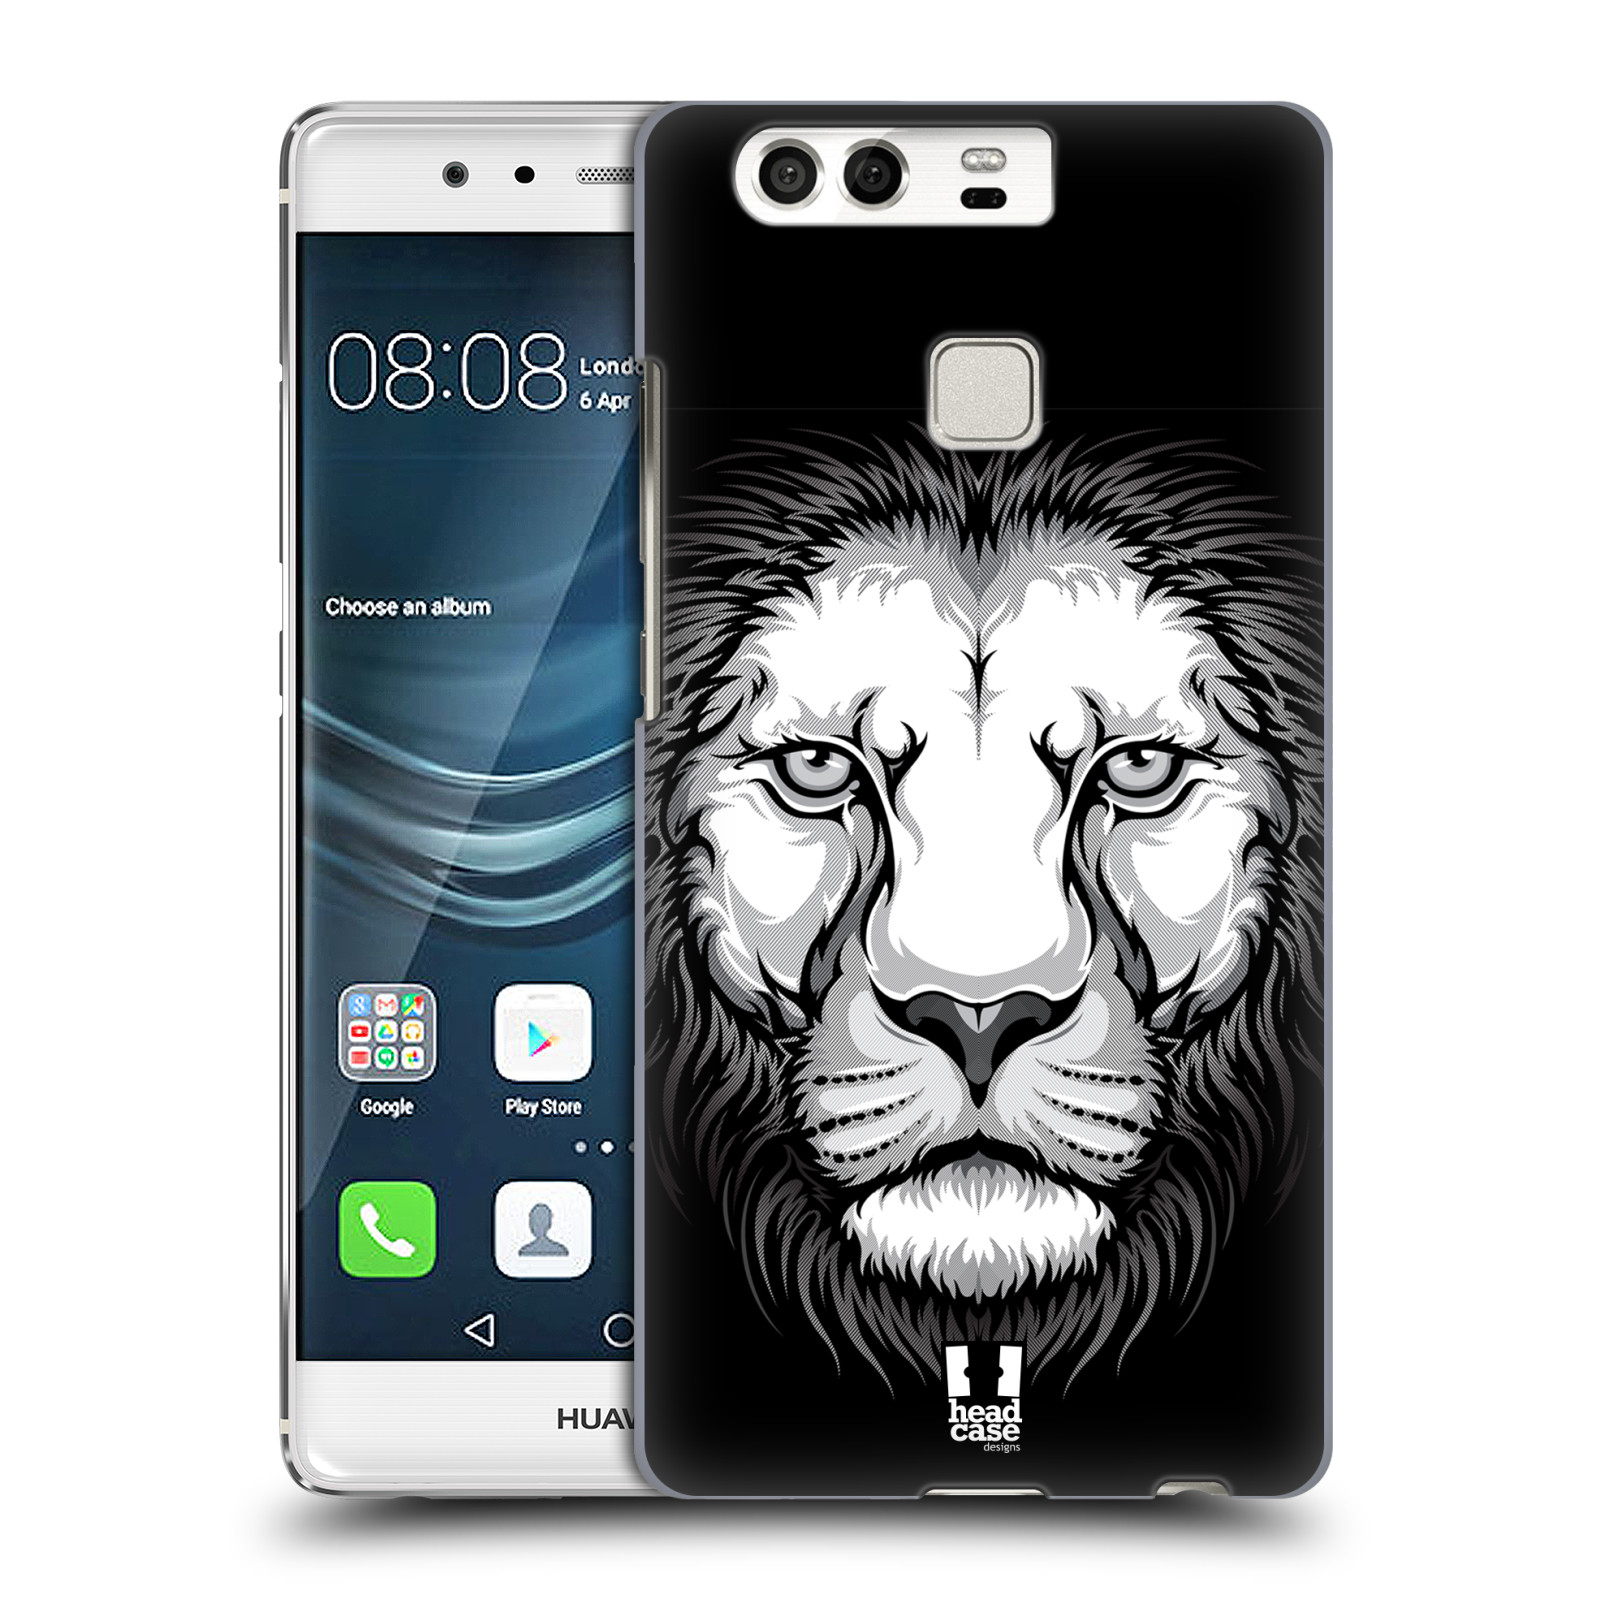 HEAD CASE plastový obal na mobil Huawei P9 / P9 DUAL SIM vzor Zvíře kreslená tvář lev